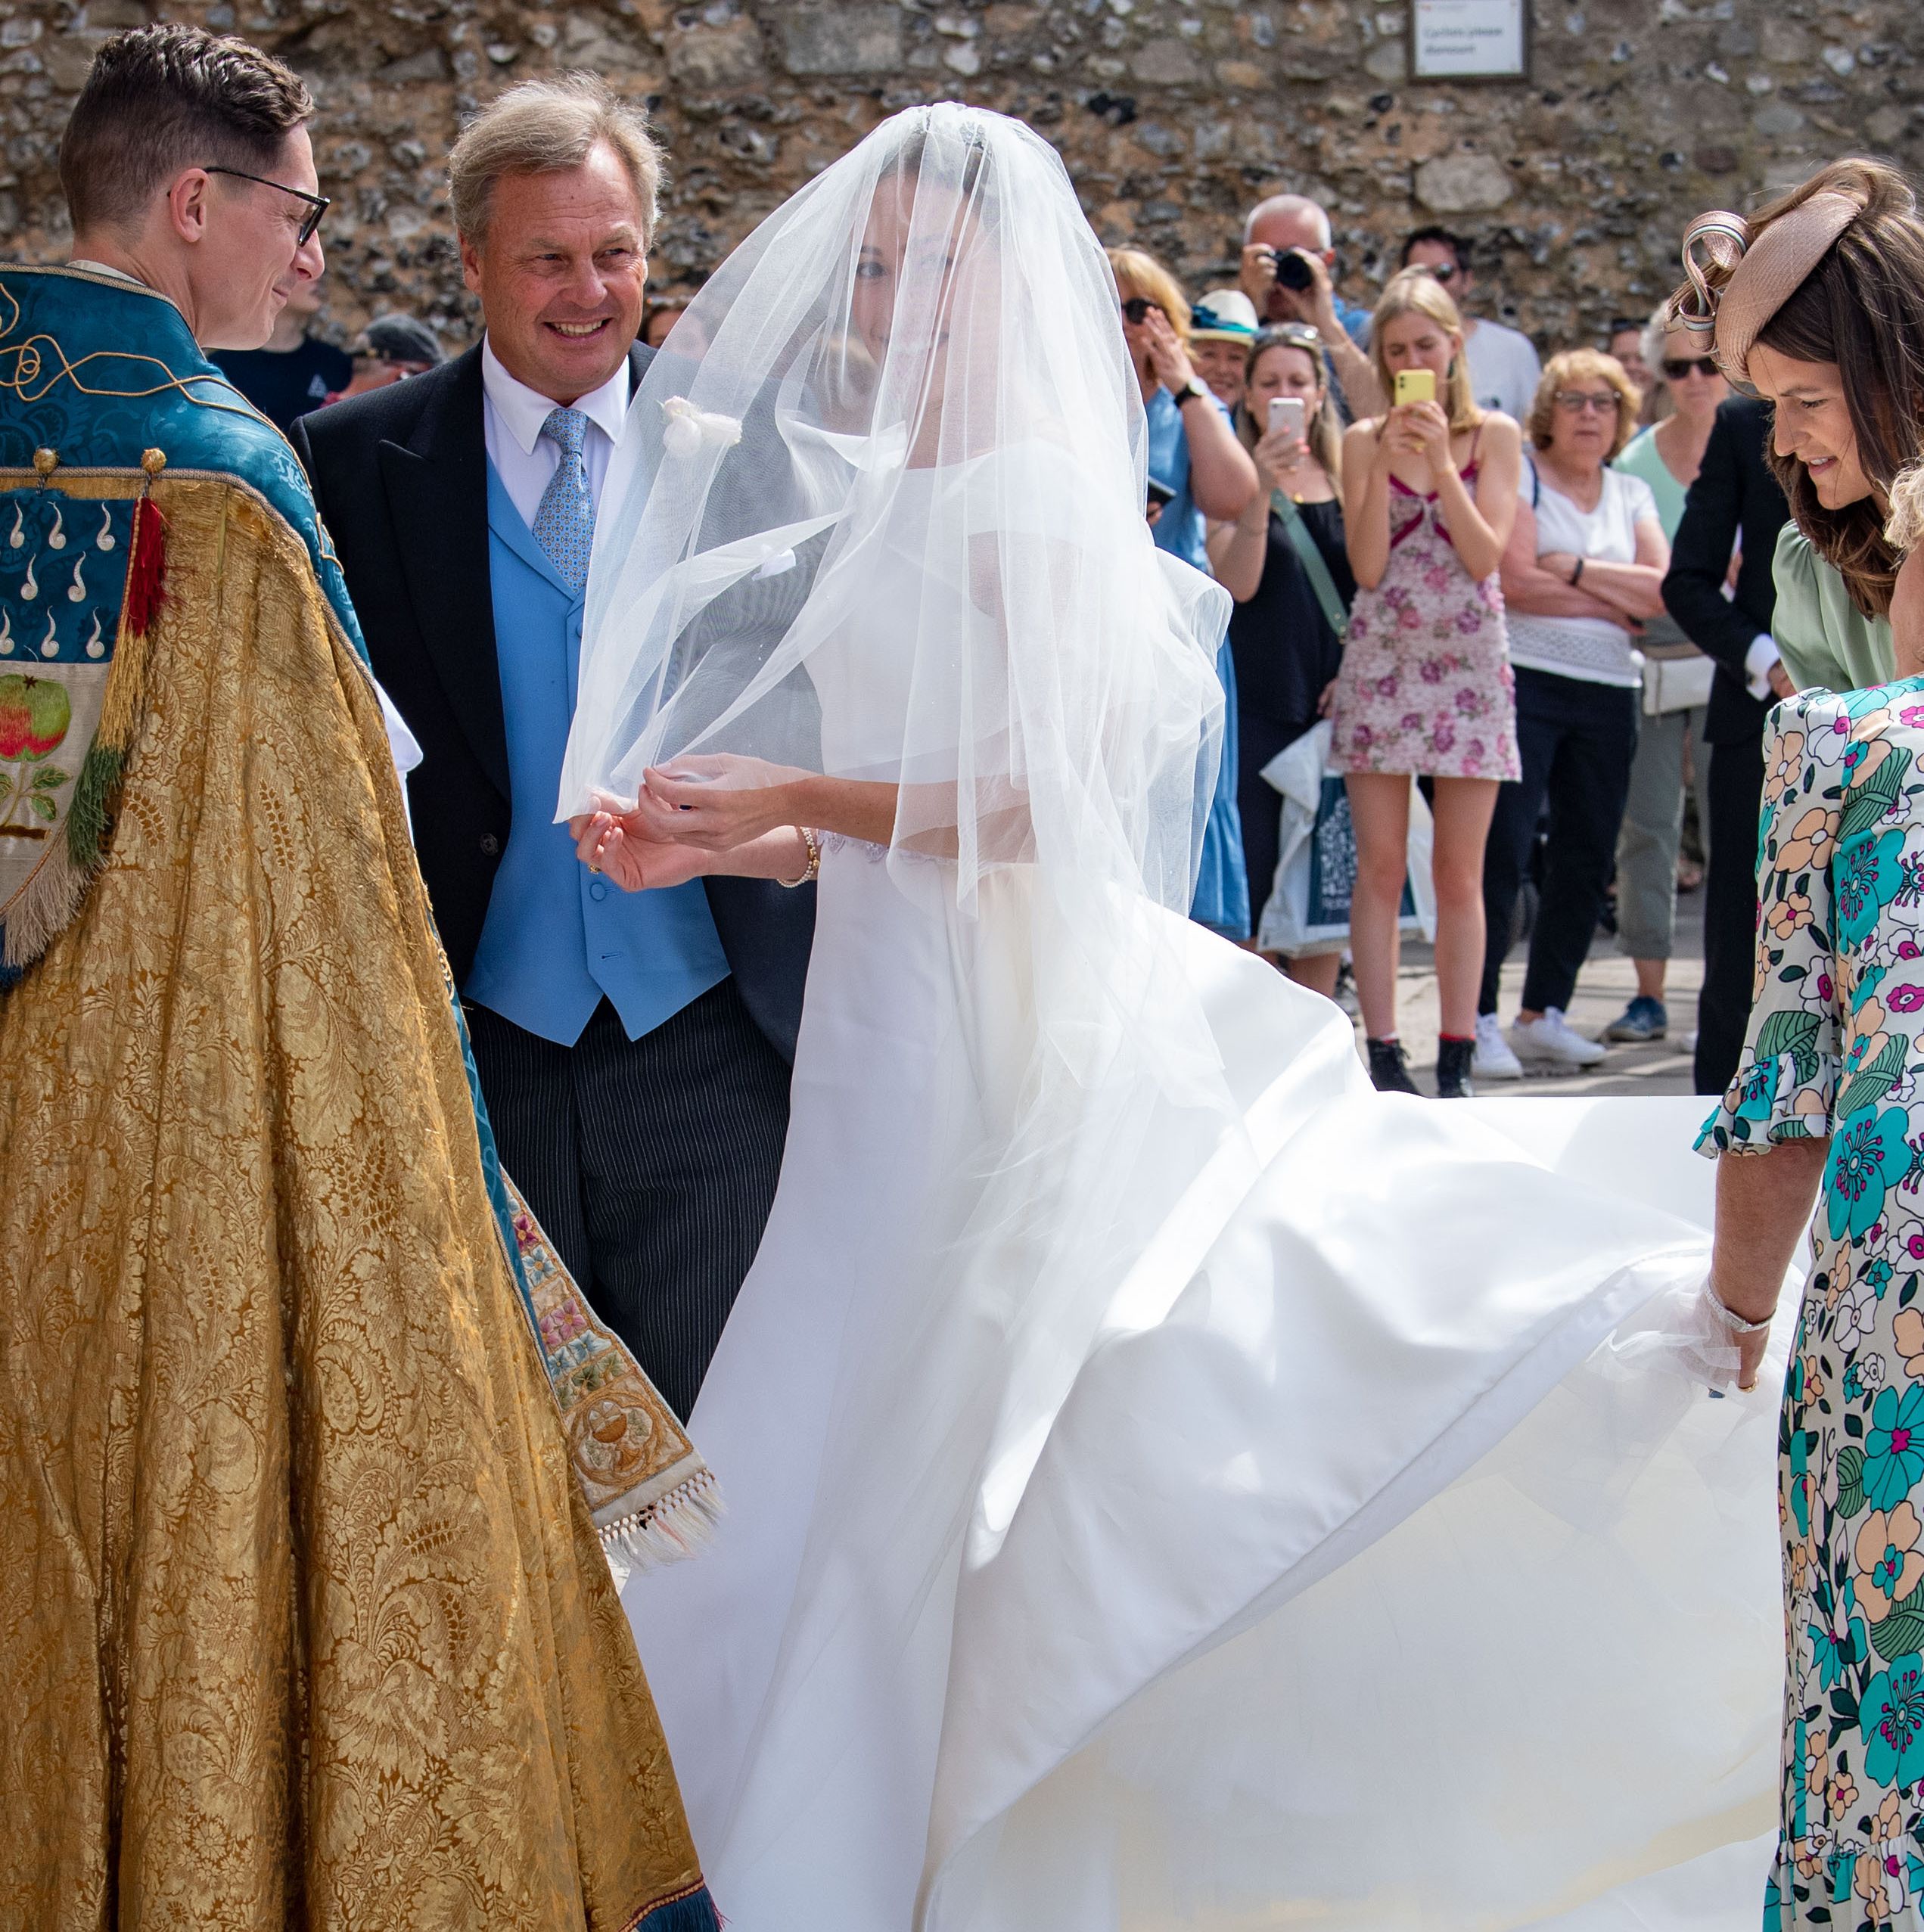 Queen Elizabeth's Cousin Lady Tatiana Mountbatten Gets Married